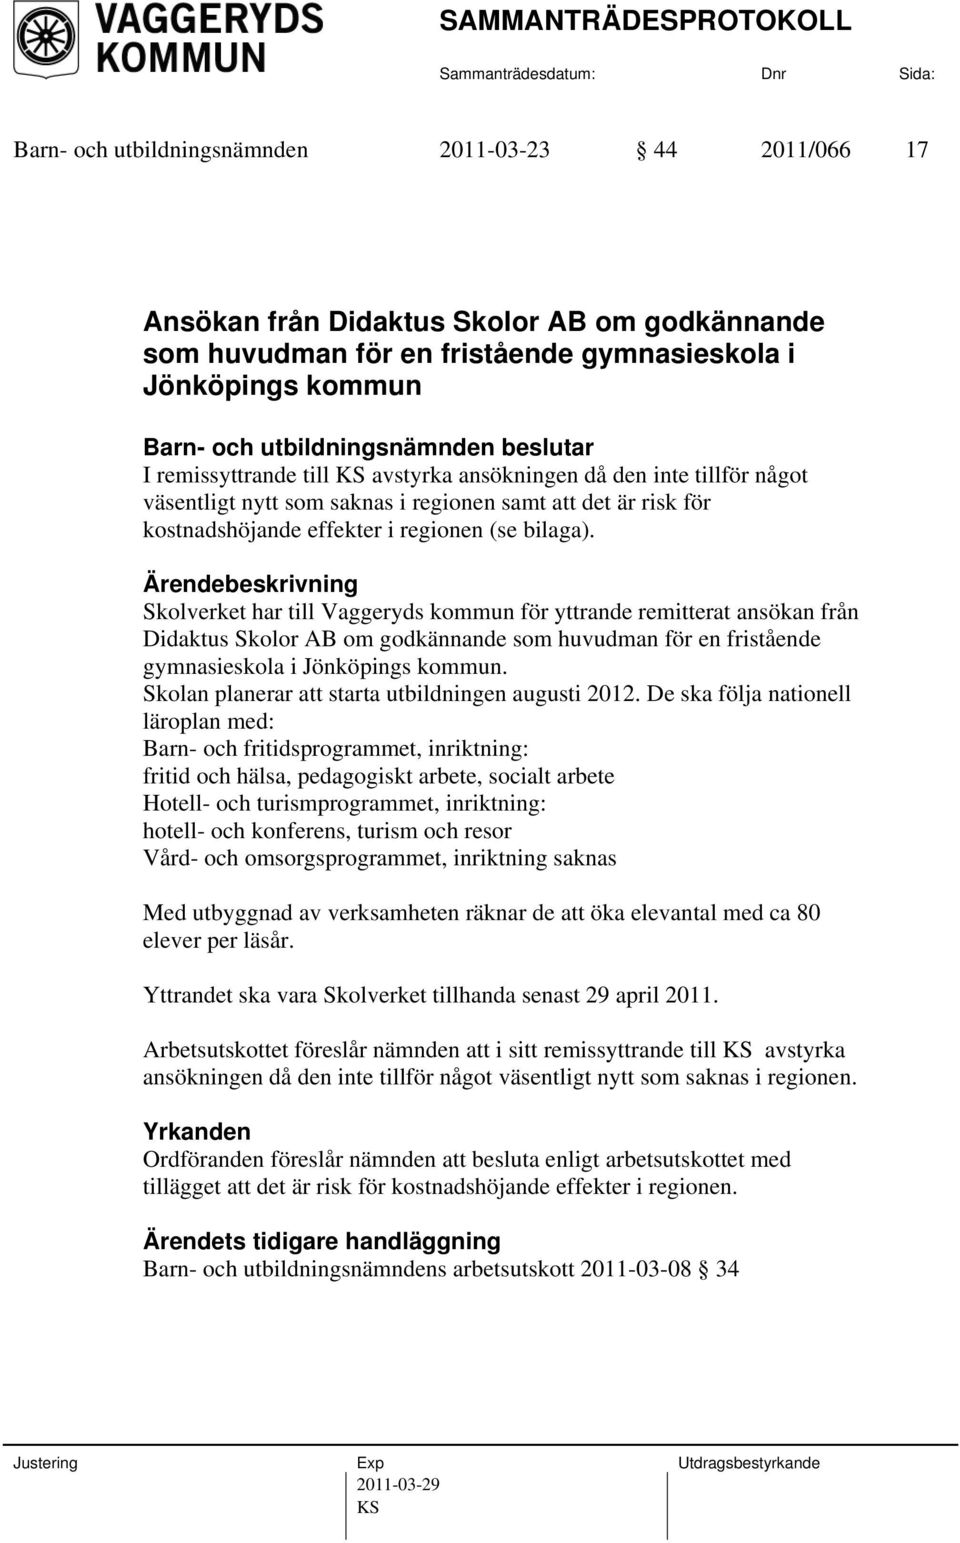 Skolverket har till Vaggeryds kommun för yttrande remitterat ansökan från Didaktus Skolor AB om godkännande som huvudman för en fristående gymnasieskola i Jönköpings kommun.